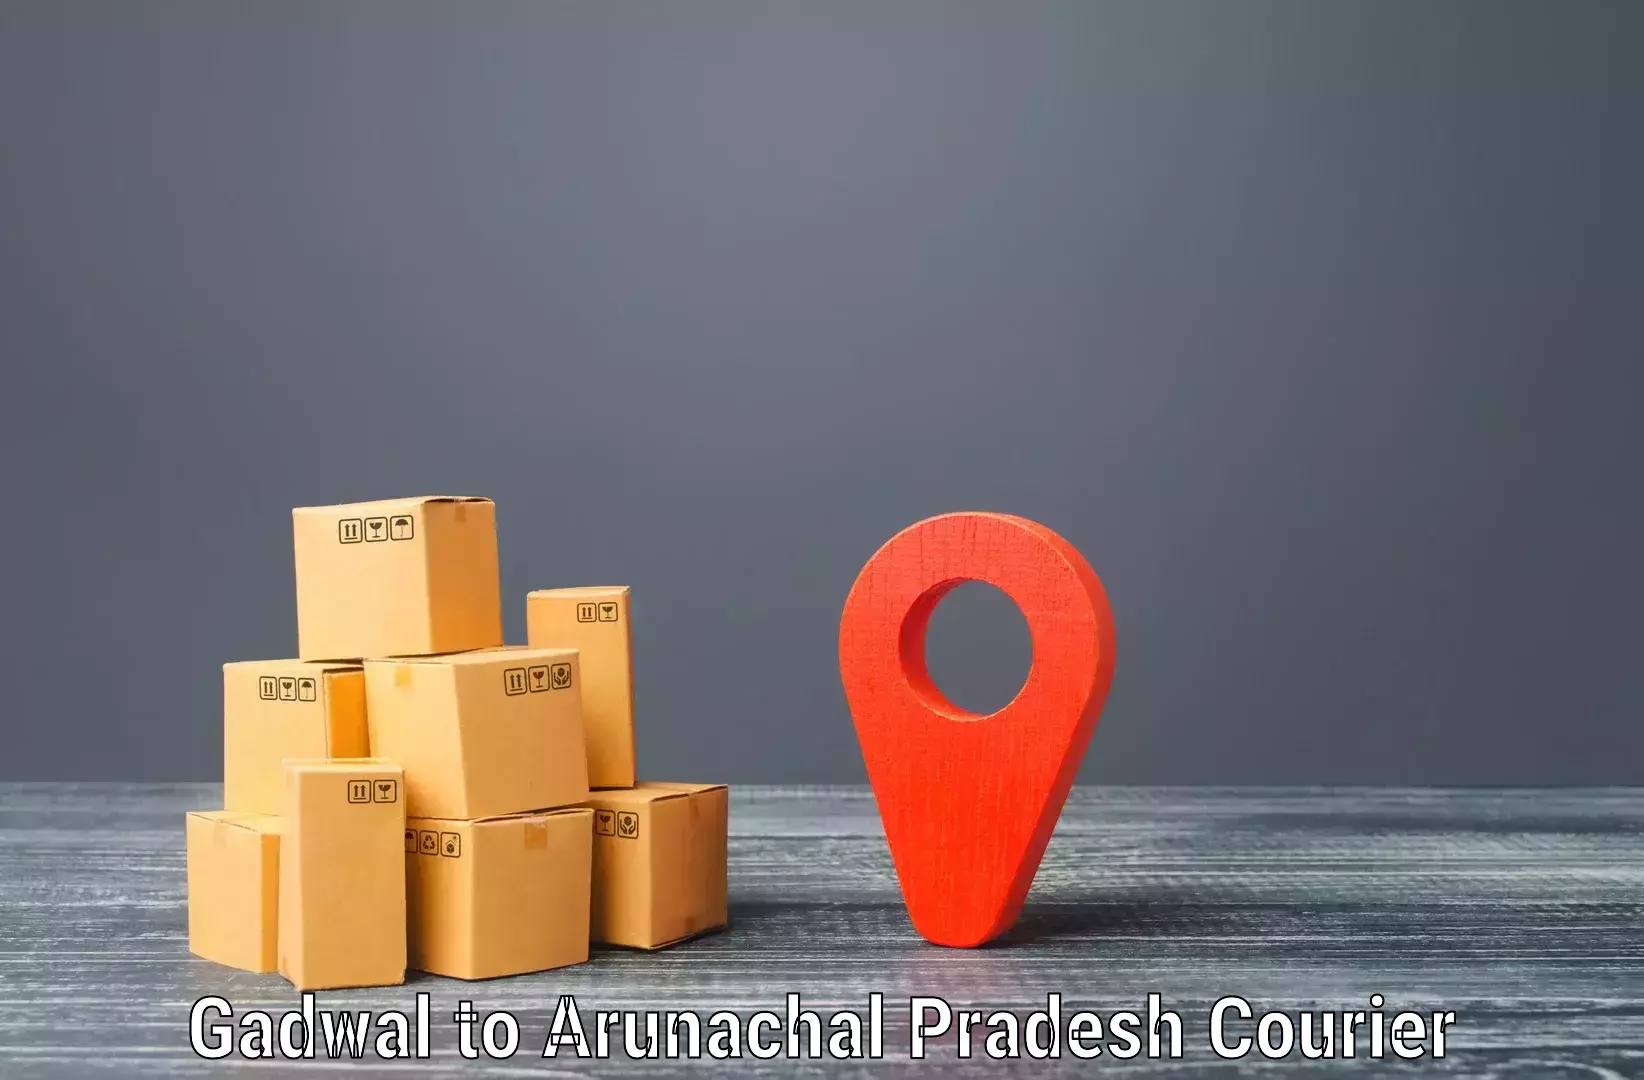 Multi-national courier services Gadwal to Arunachal Pradesh